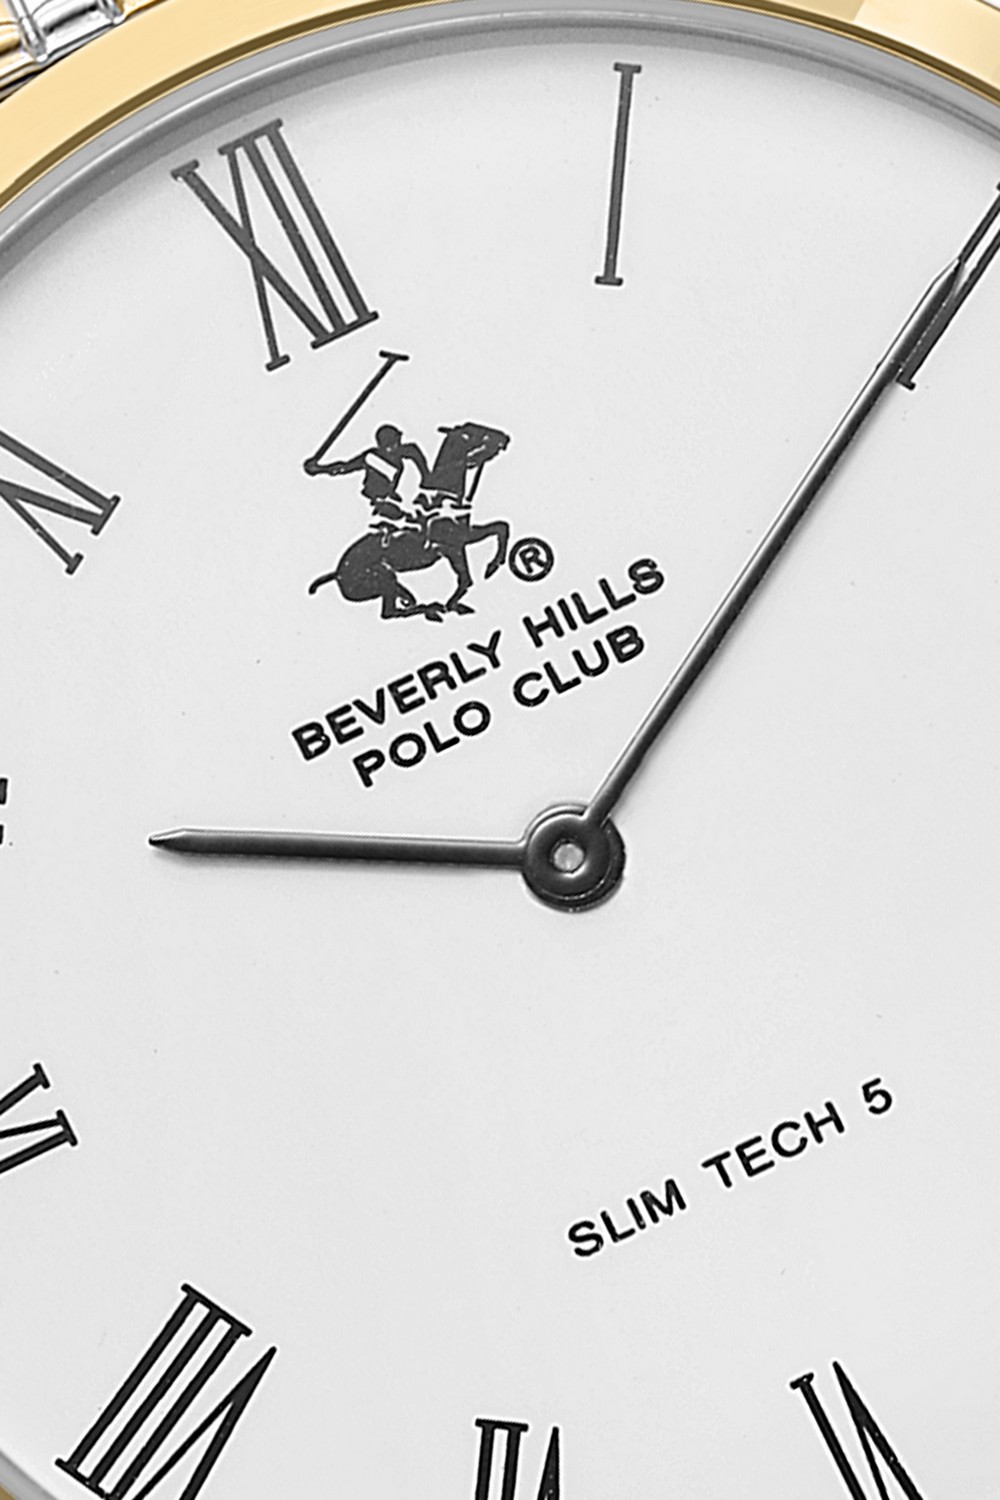 BEVERLY HILLS POLO CLUB  Мужские часы, кварцевый механизм, сталь с покрытием, 39 мм